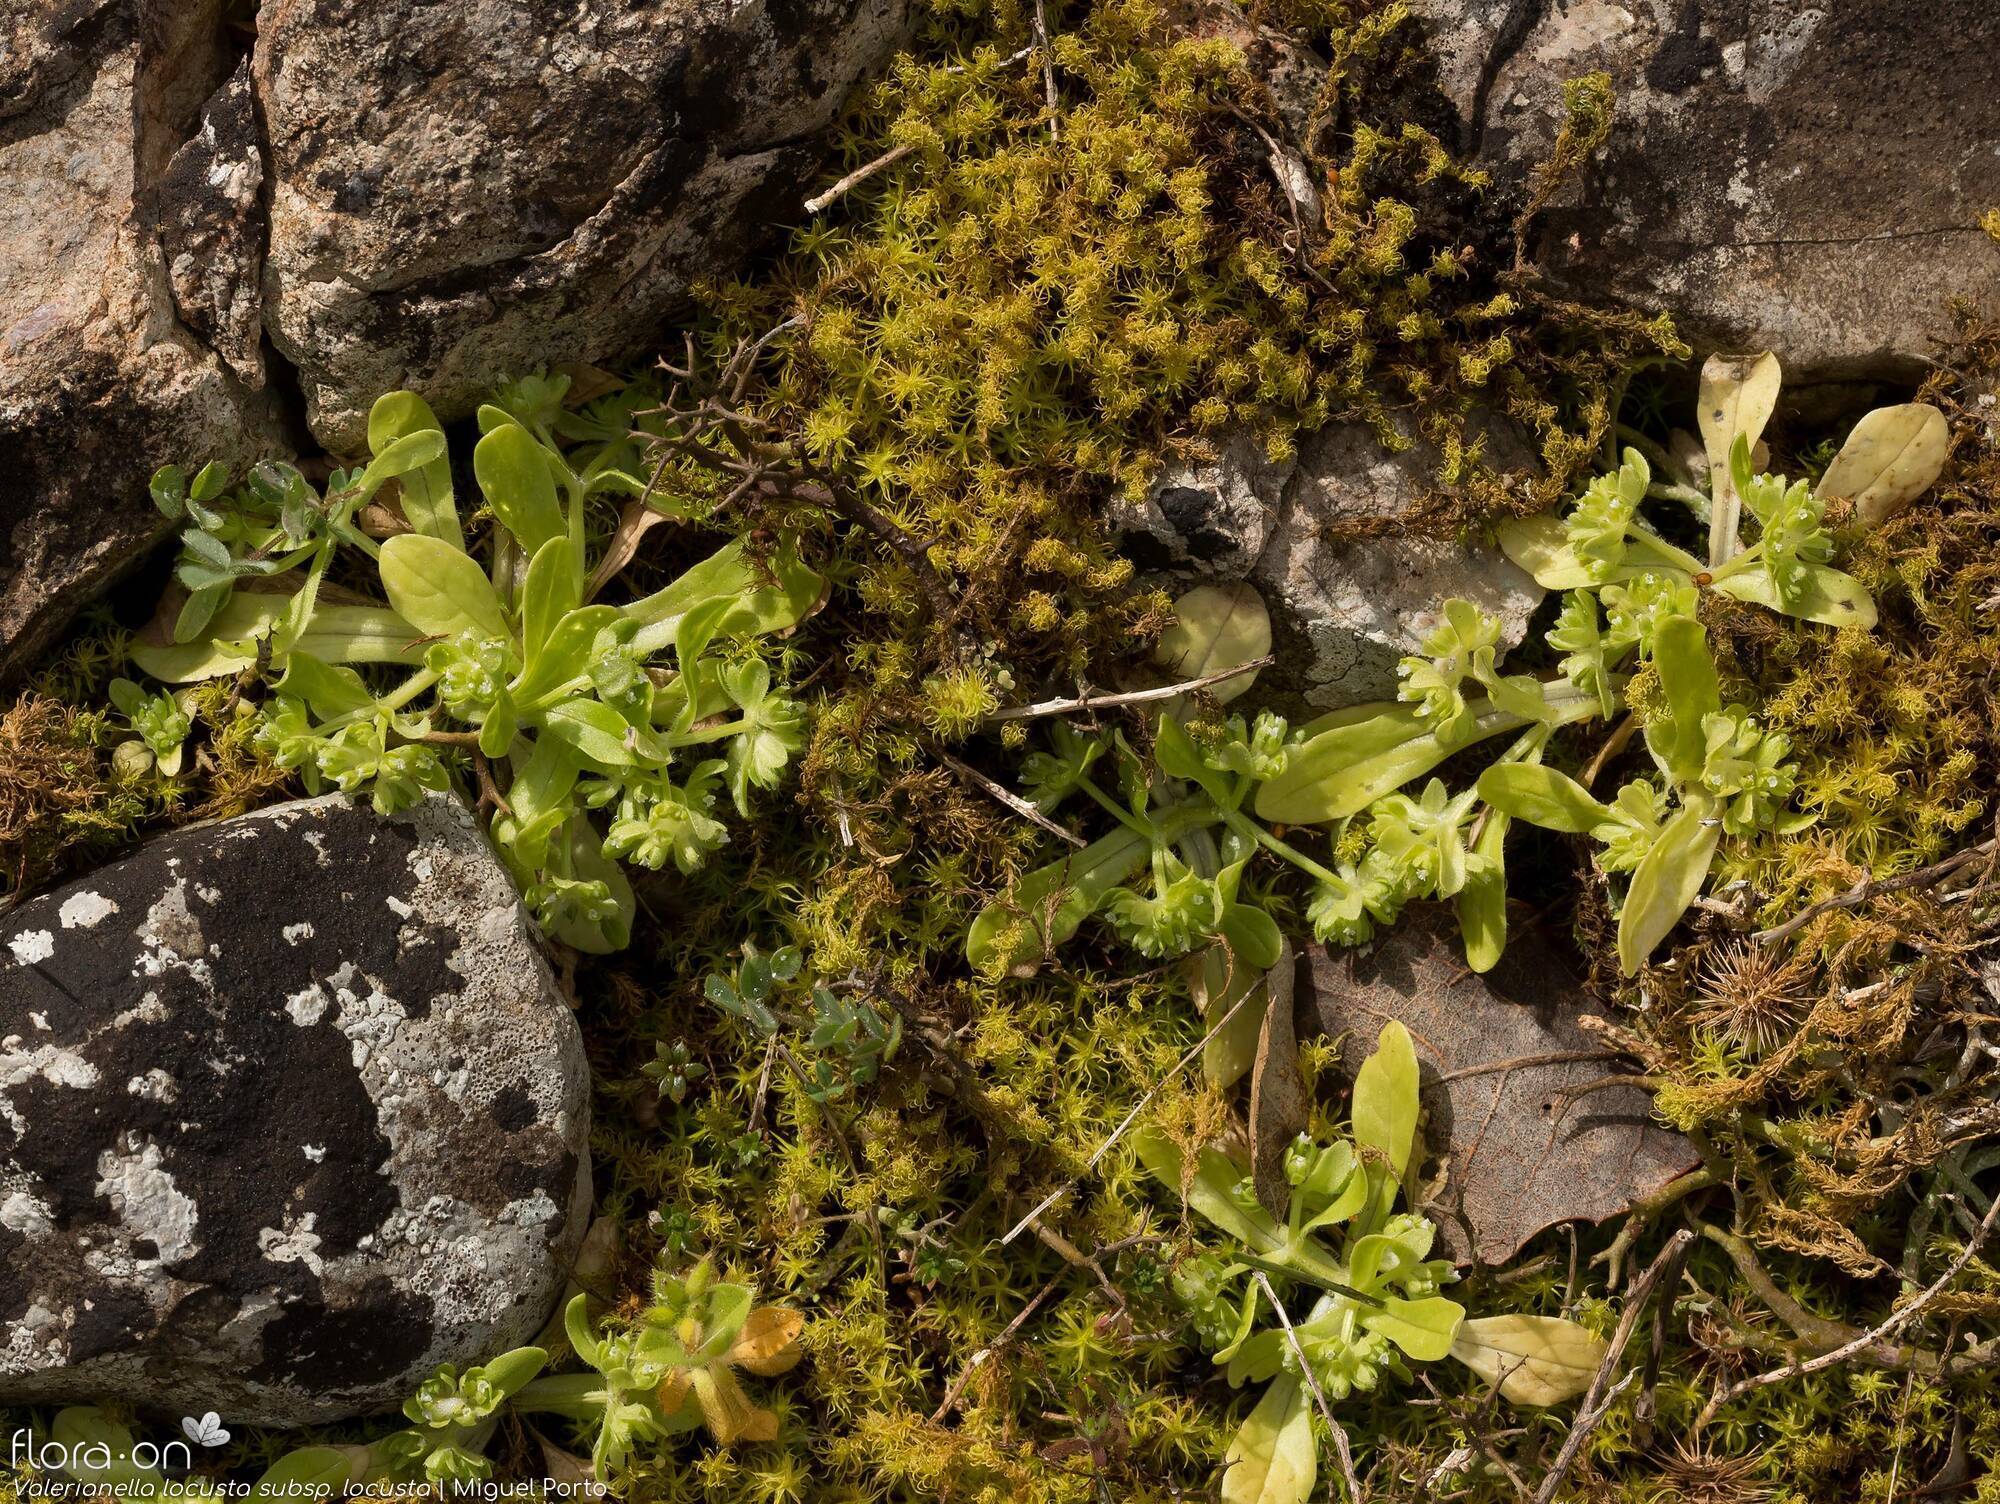 Valerianella locusta locusta - Habitat | Miguel Porto; CC BY-NC 4.0